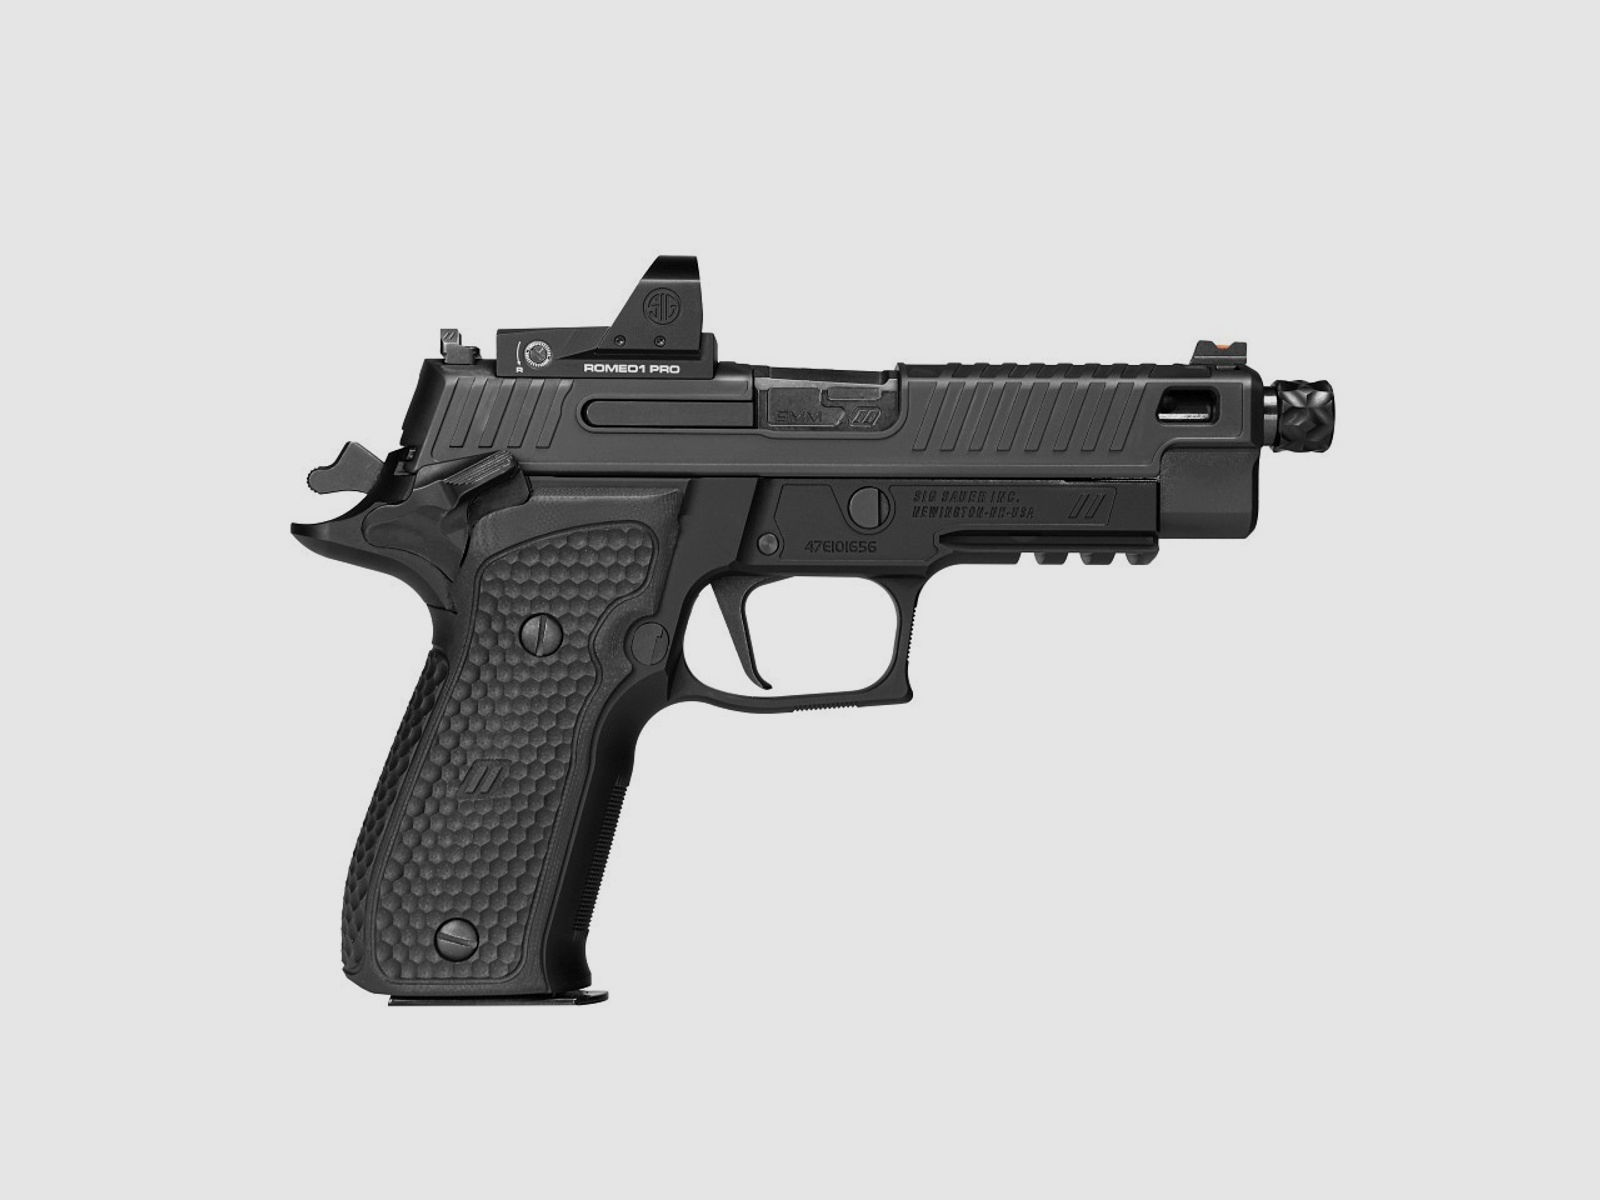 SIG SAUER - Pistole P226 ZEV